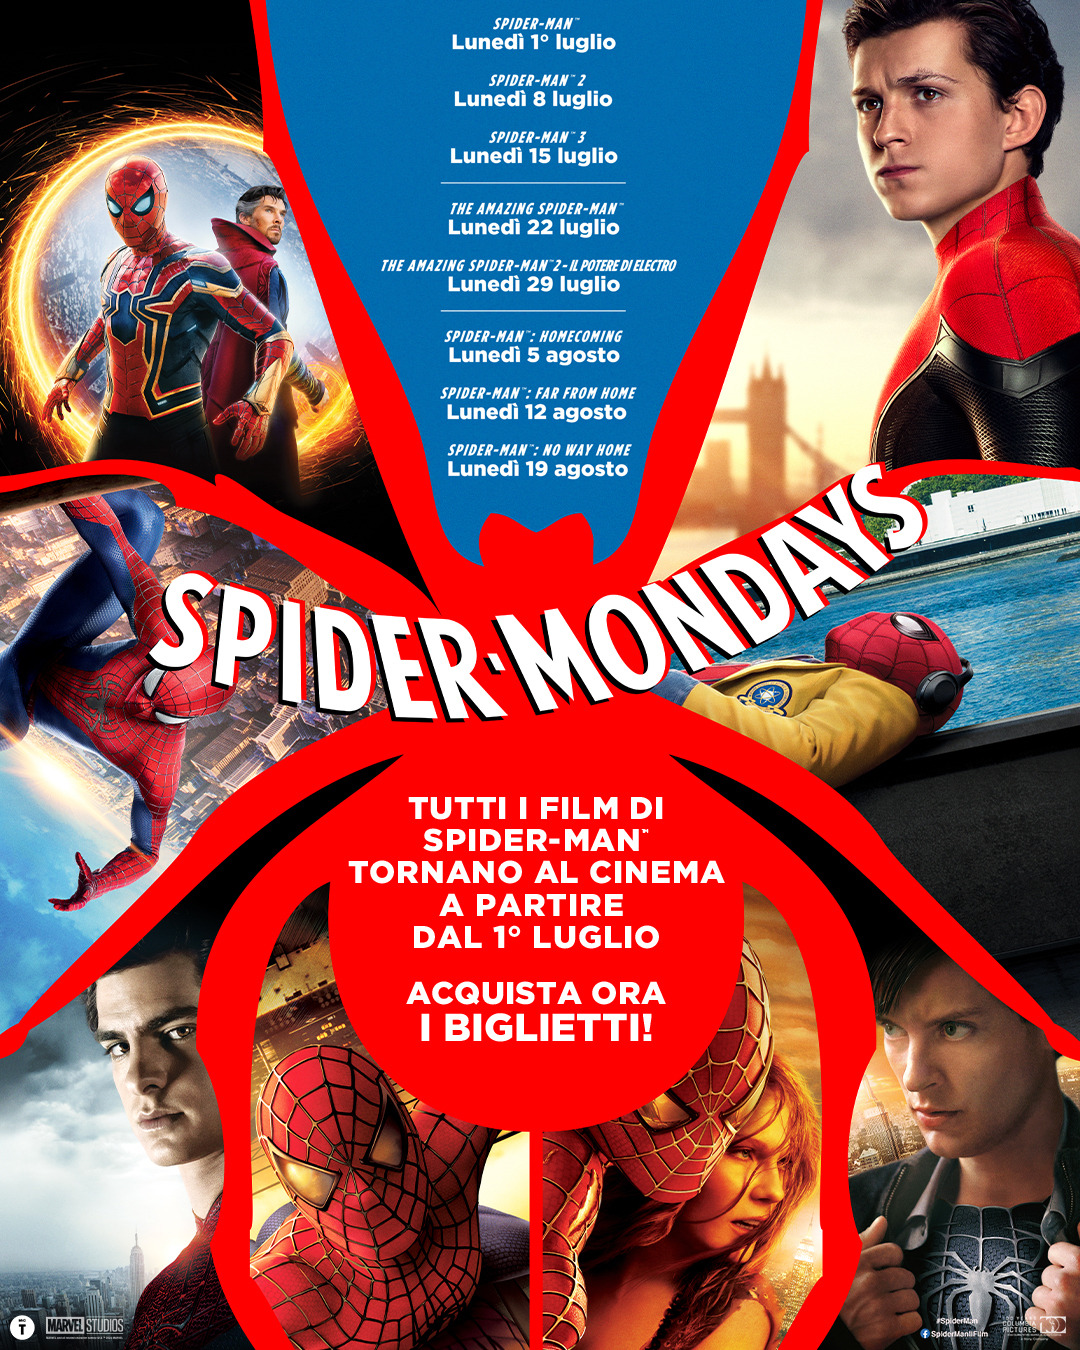 “Spider-Mondays”, tutti i film di Spider-Man tornano al cinema ogni lunedì a partire dal 1° luglio